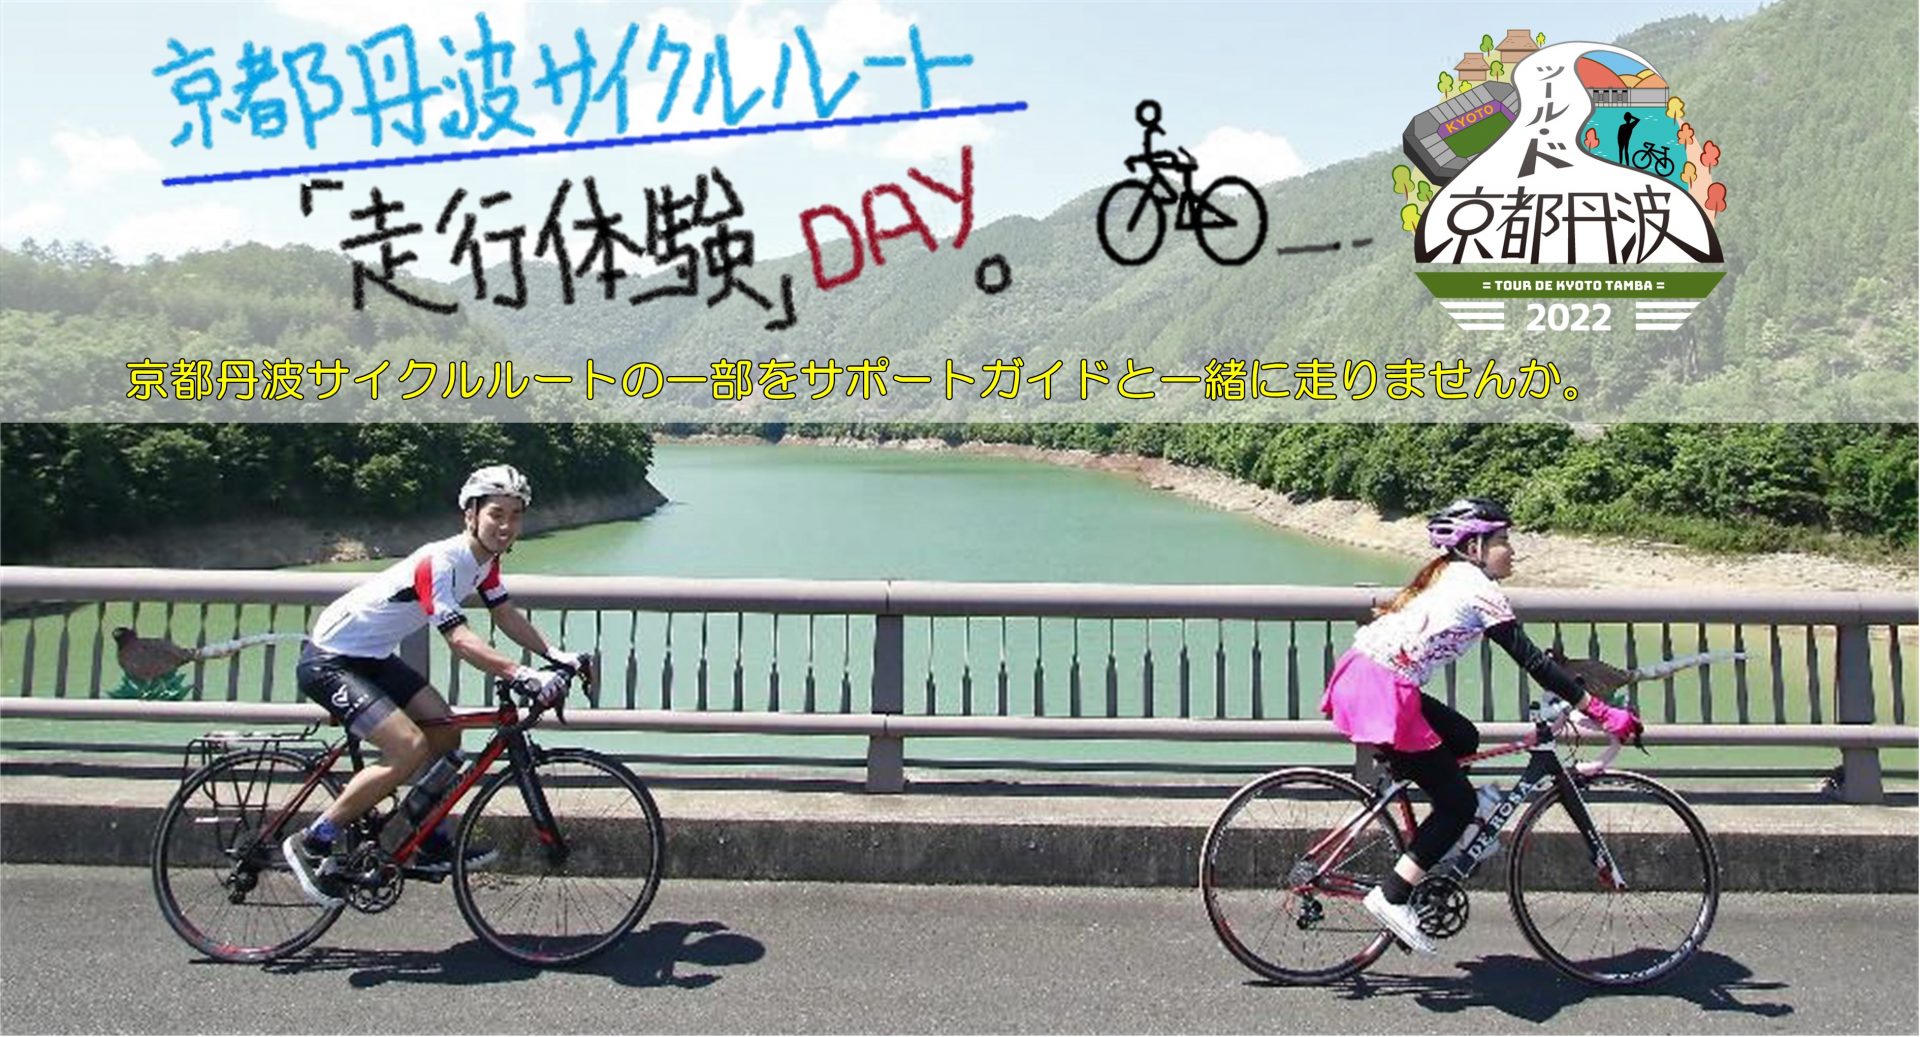 京都丹波サイクルルート走行体験DAY